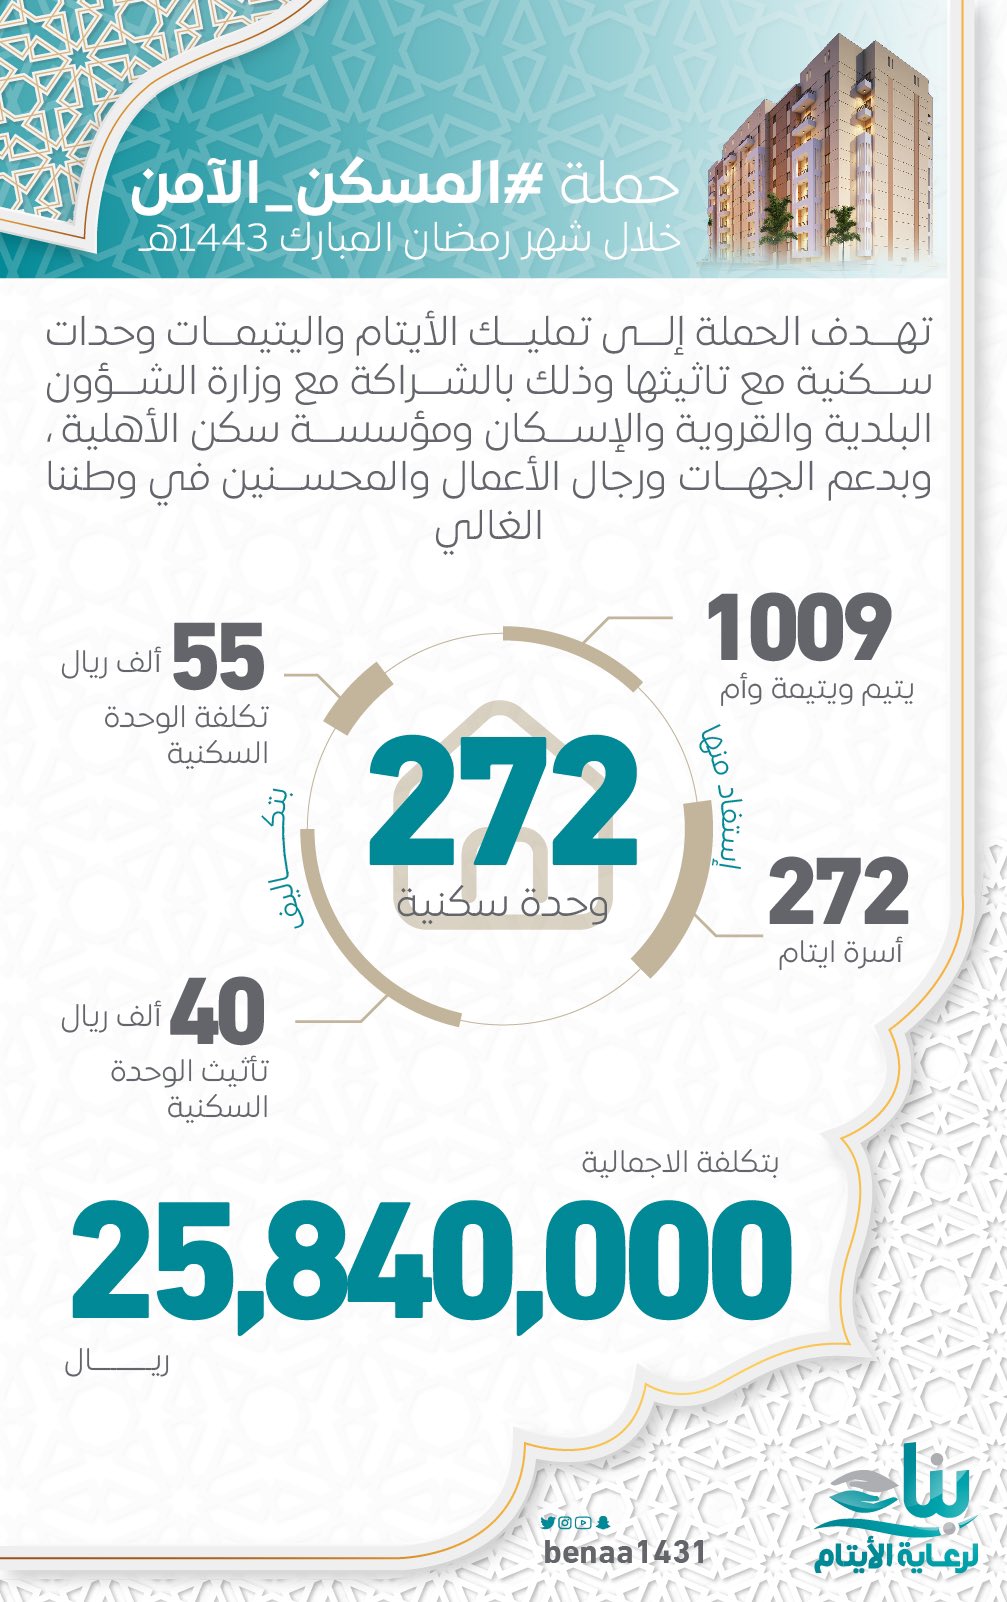 سمو الأمير تركي بن محمد بن فهد يتكفل بإكمال الحملة الأولى لمشروع المسكن الآمن